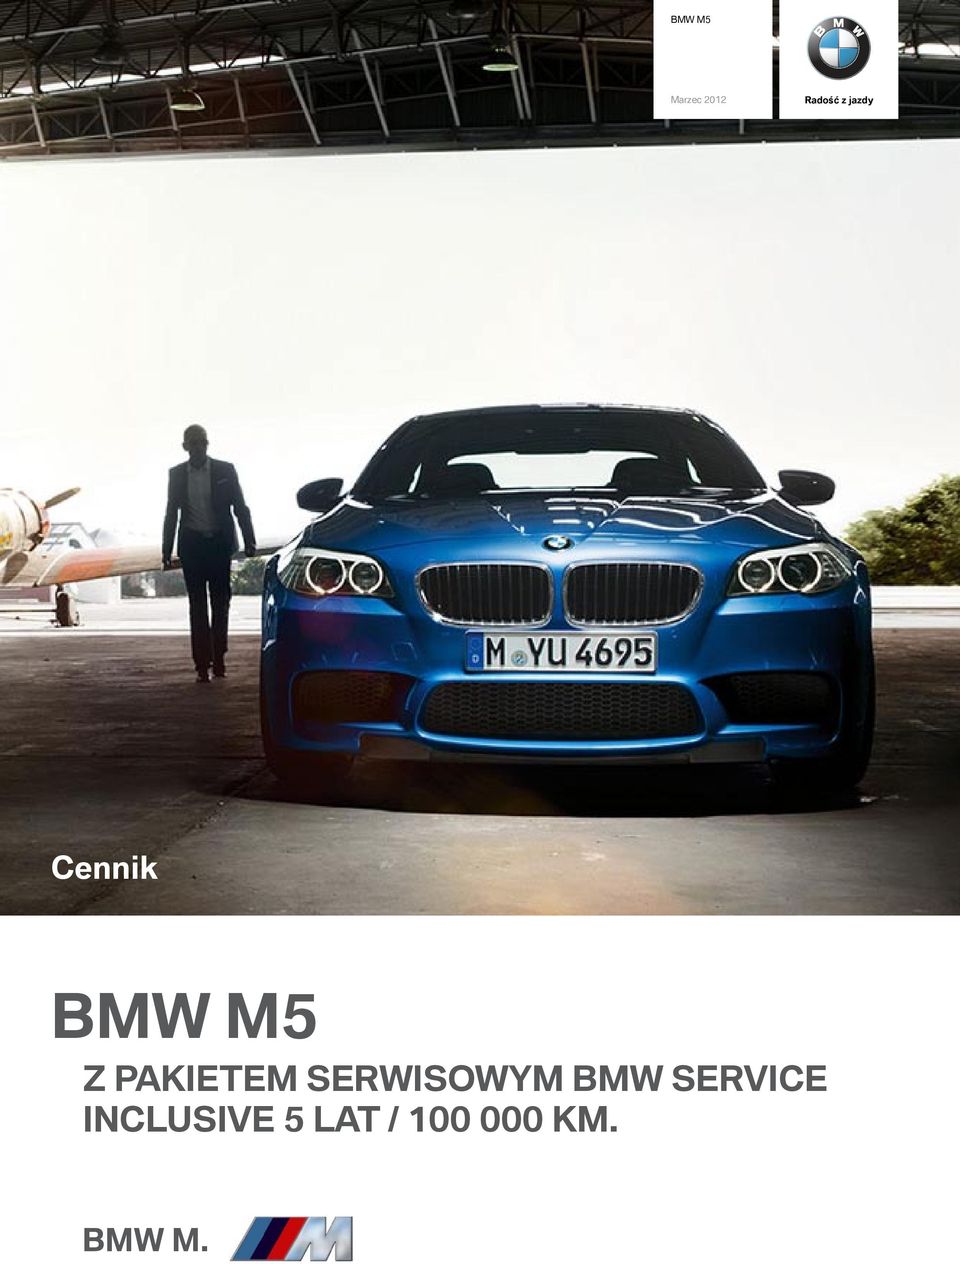 SERWISOWYM BMW SERVICE